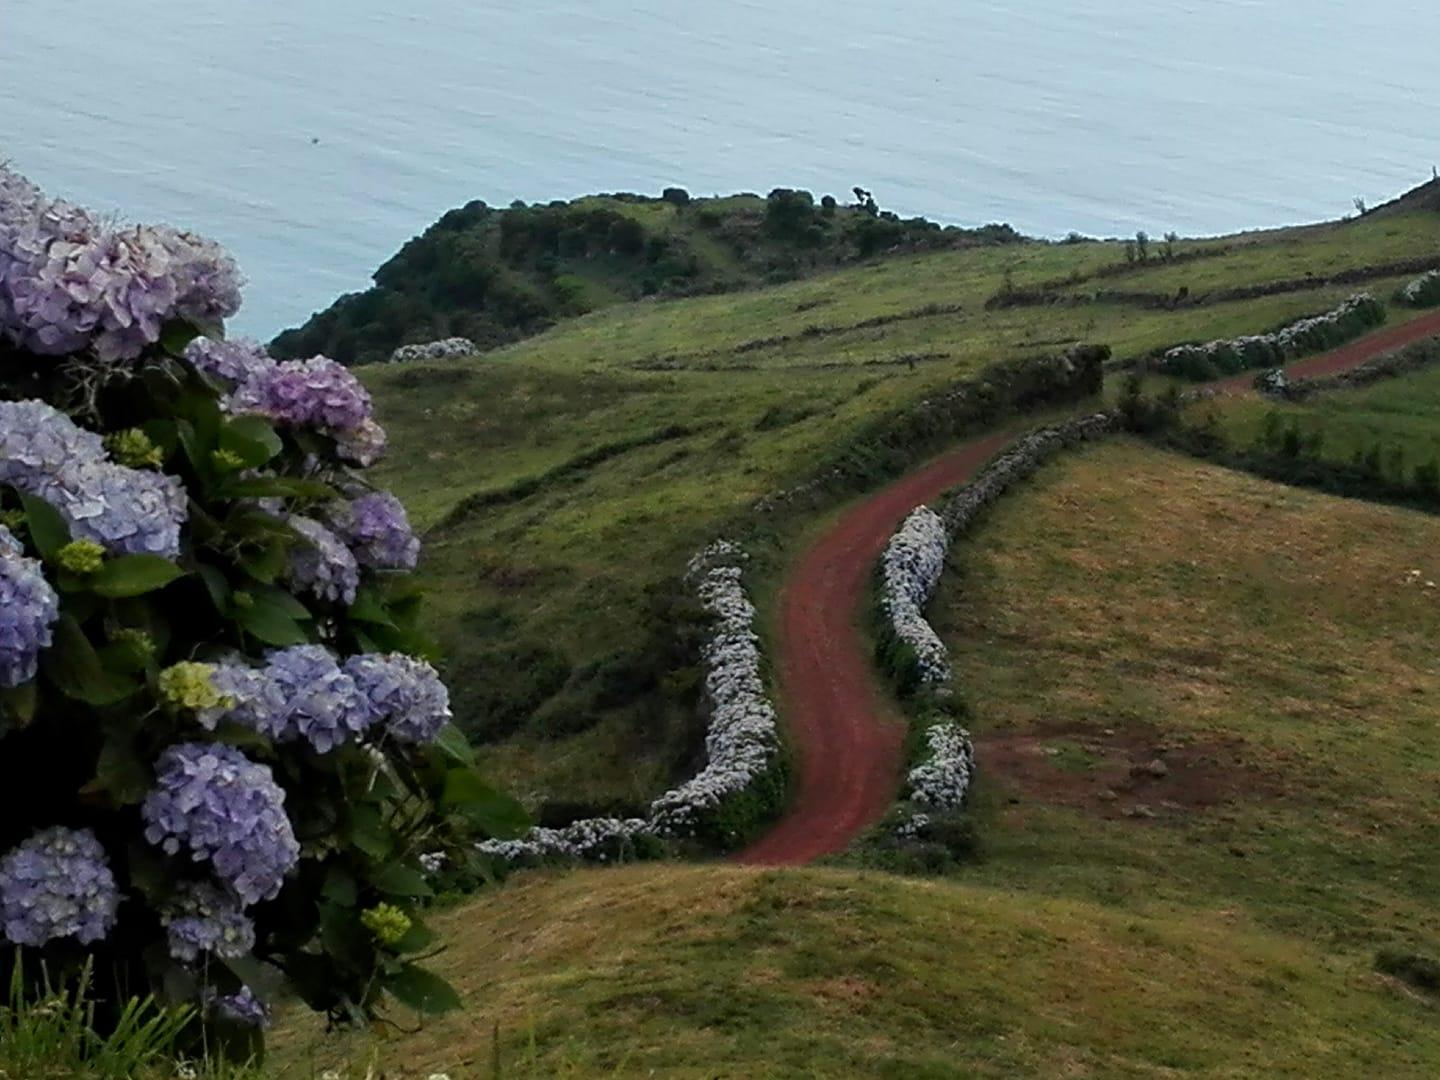 Hortênsias Açores - Galeria de fotos - Amantes dos Açores - byaçores